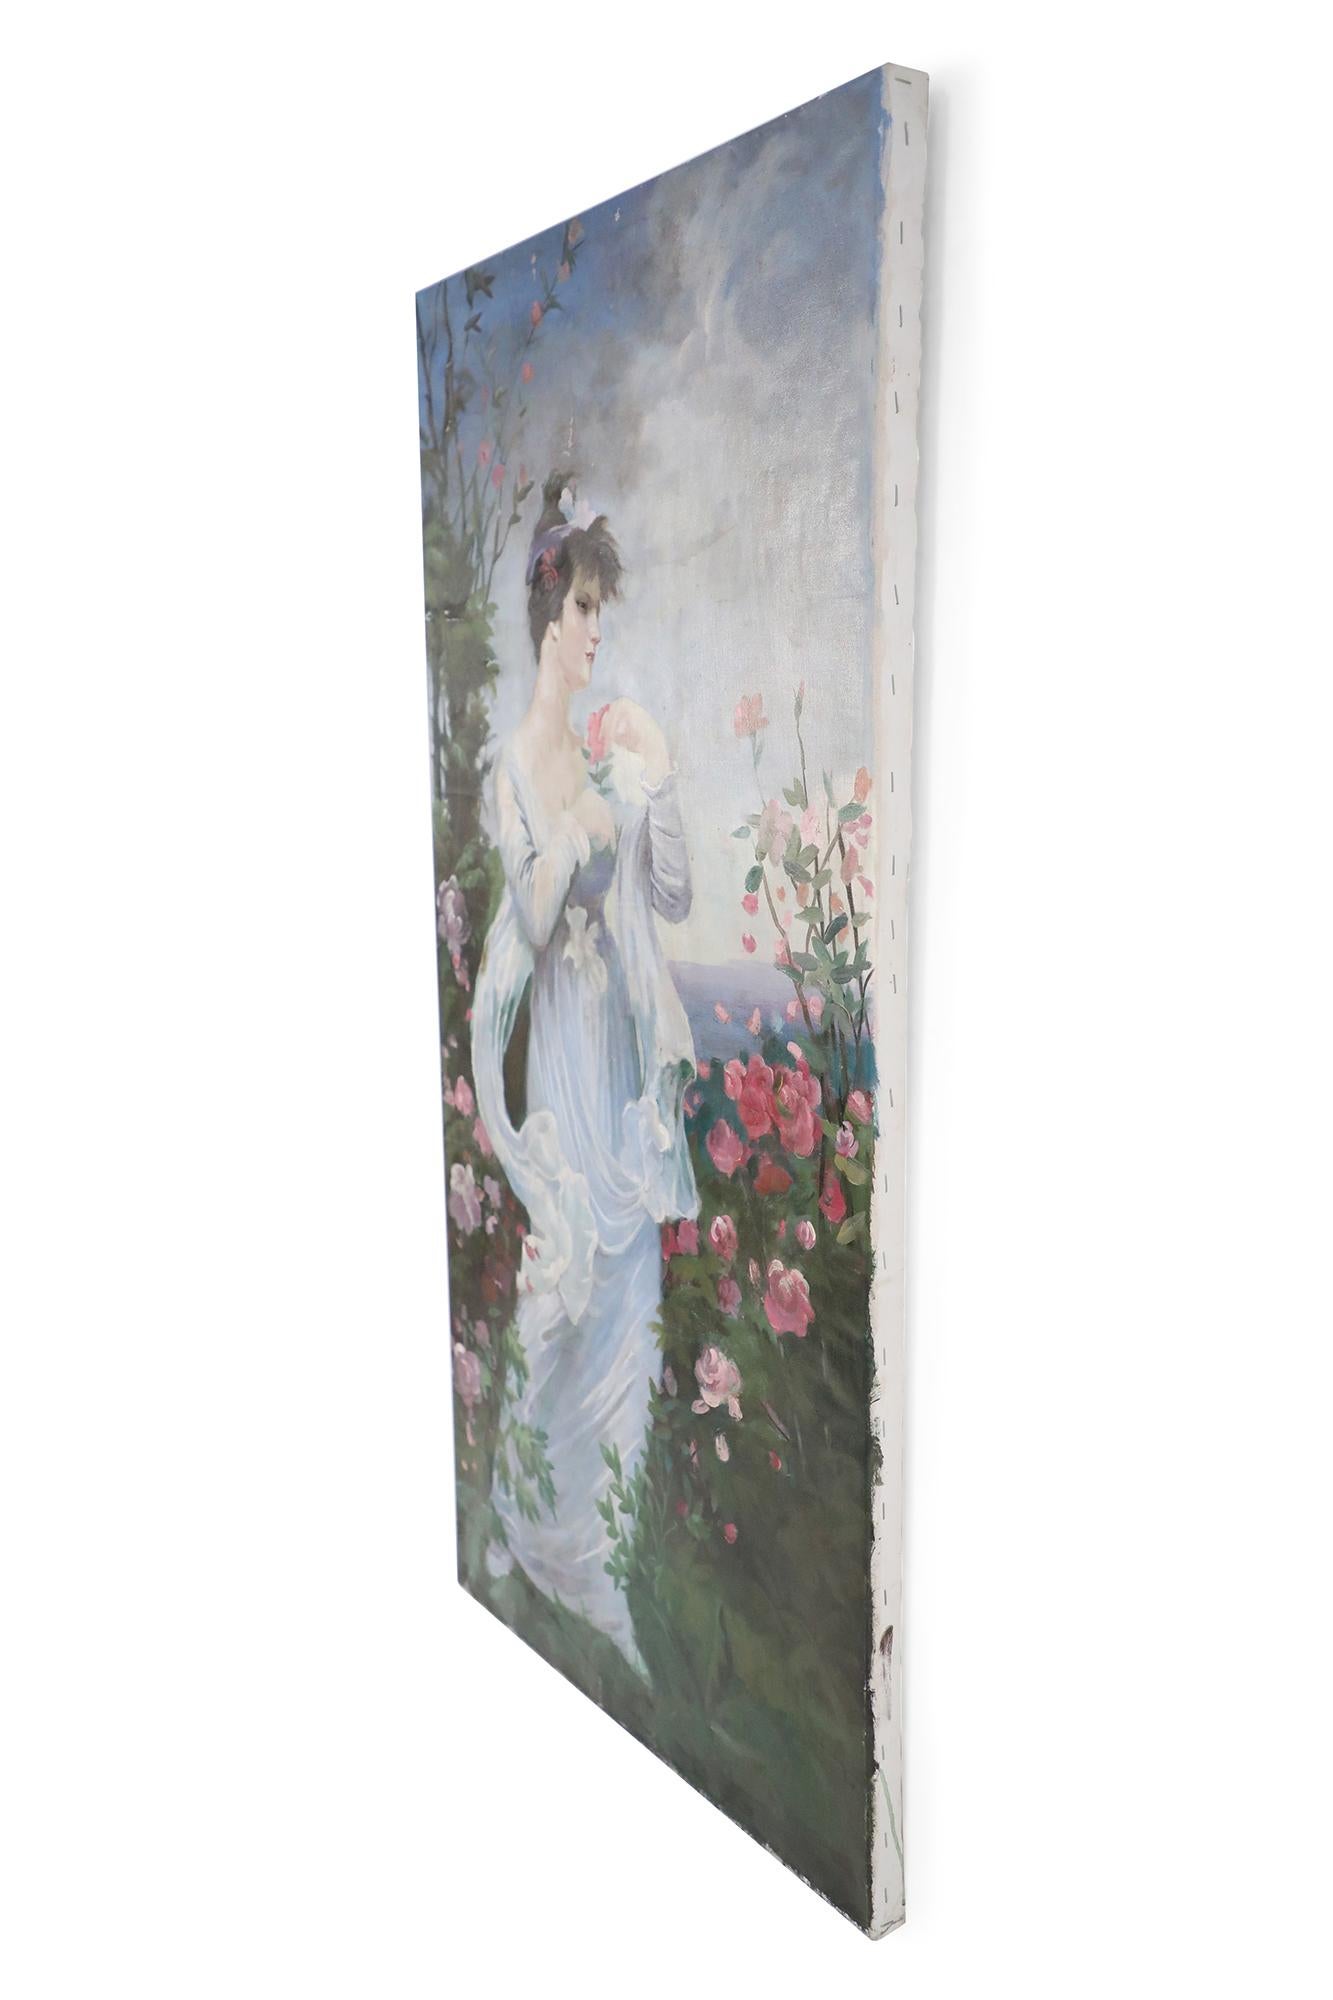 Vieille peinture à l'huile de style néoclassique (20e siècle) représentant une femme portant une robe blanche flottante dans un jardin rempli de roses roses, avec la mer et le ciel au loin. Peint sur une toile non encadrée.
    